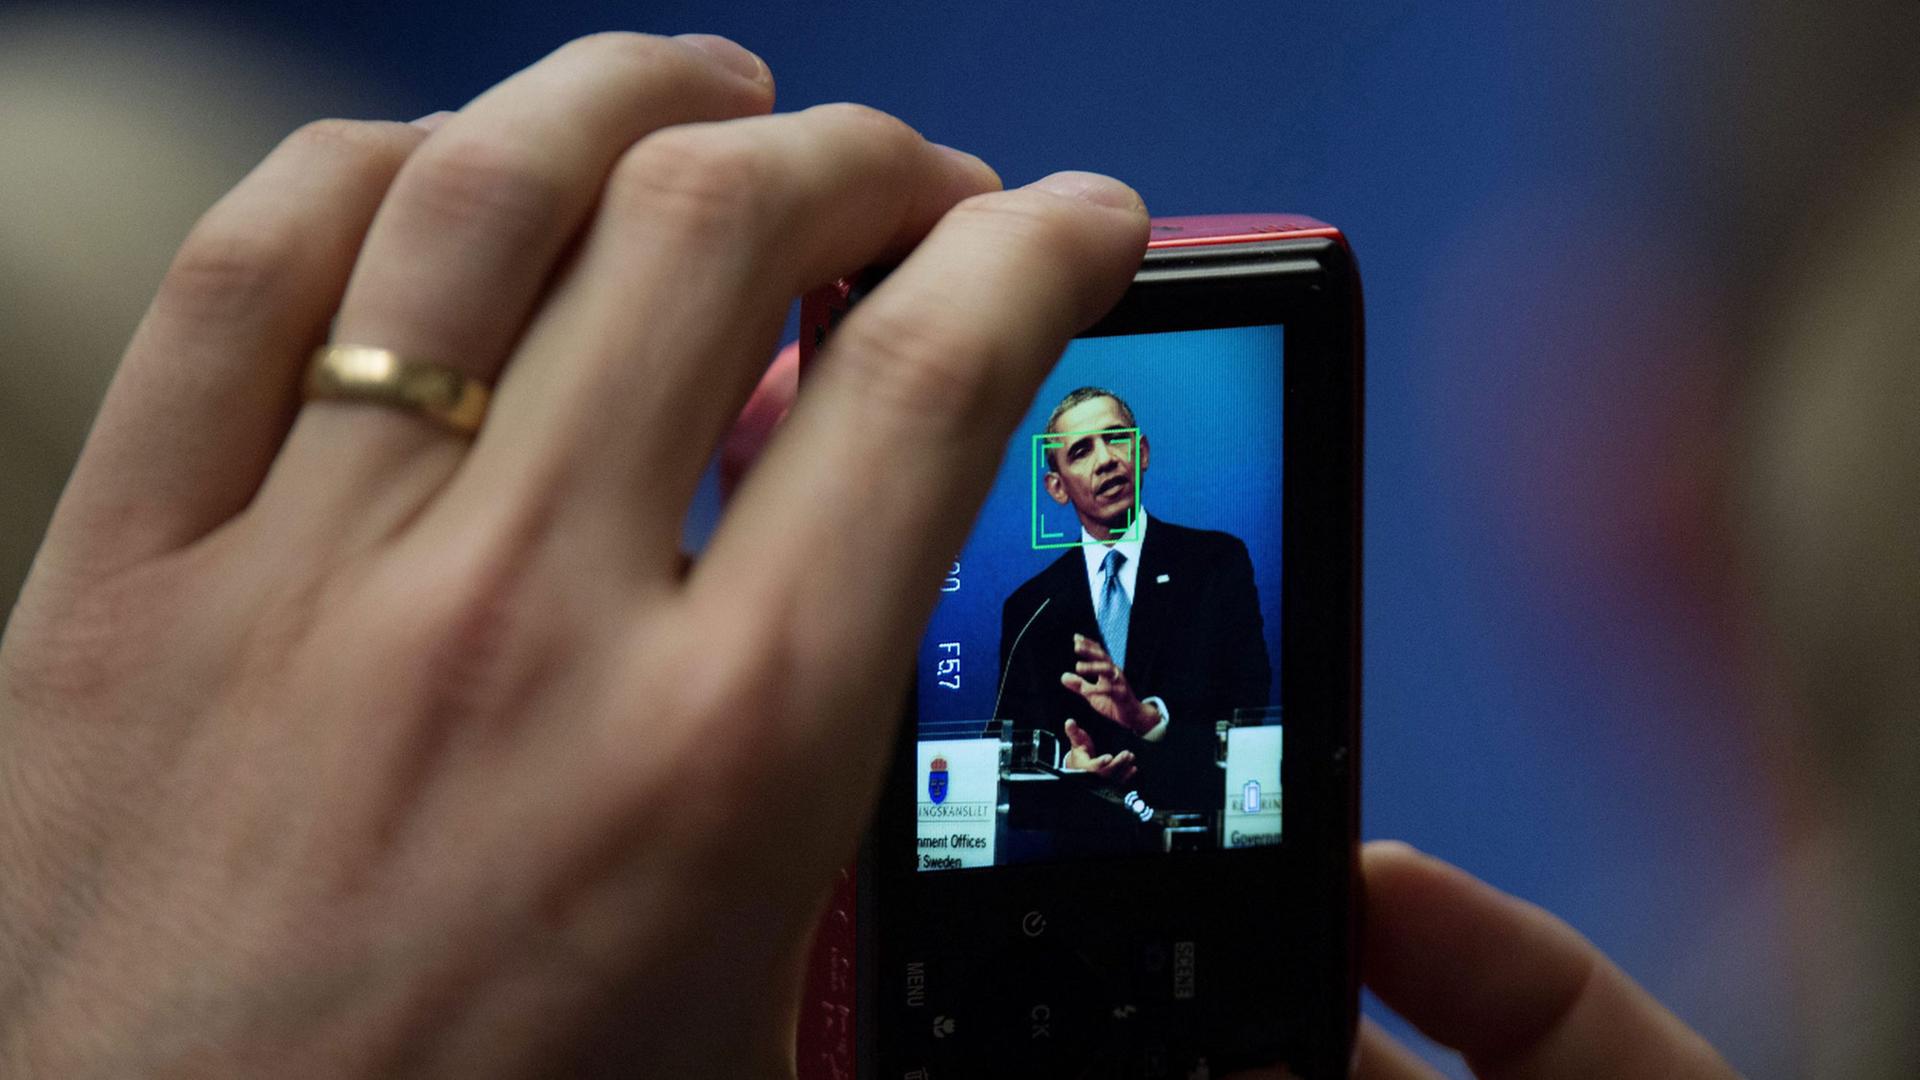 Barack Obama wird auf einer Pressekonferenz mit dem Smartphone fotografiert, Chancellery Rosenbad in Stockholm, Schweden, 4. September 2013